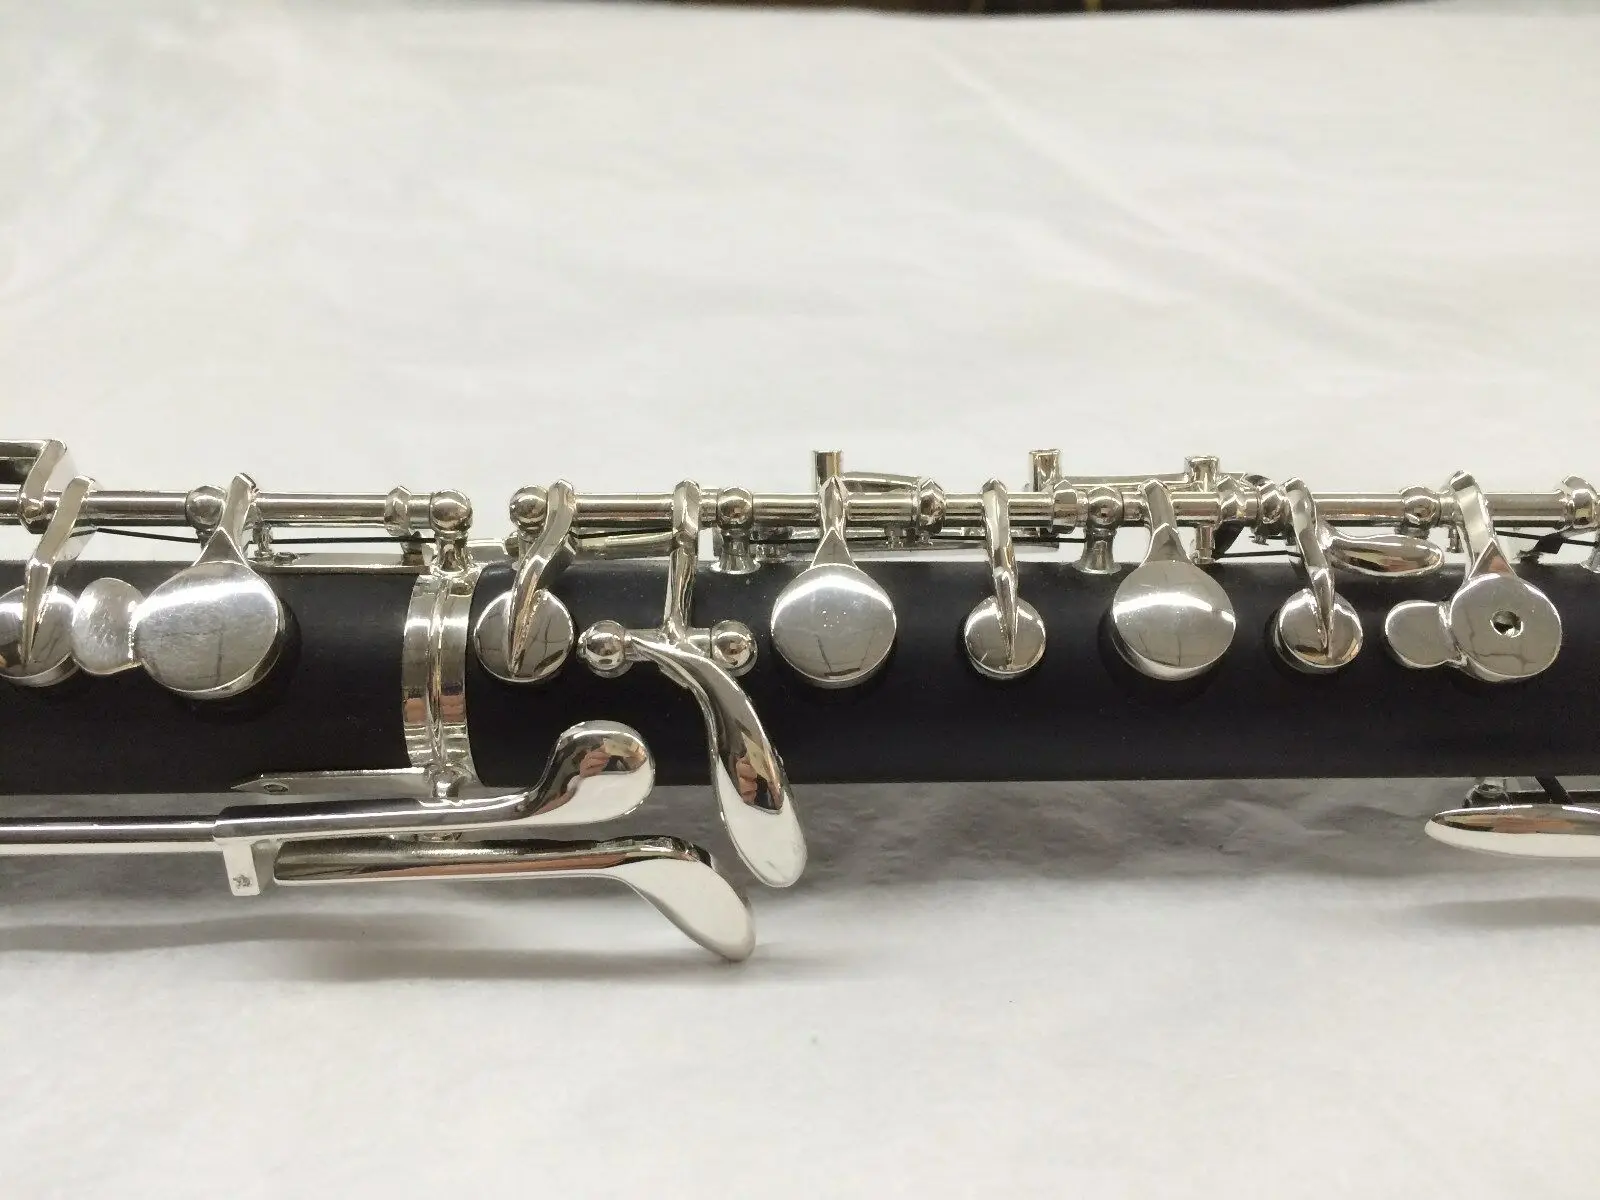 Children type oboe, c-tone, silver-plated, semi-automatic oboe